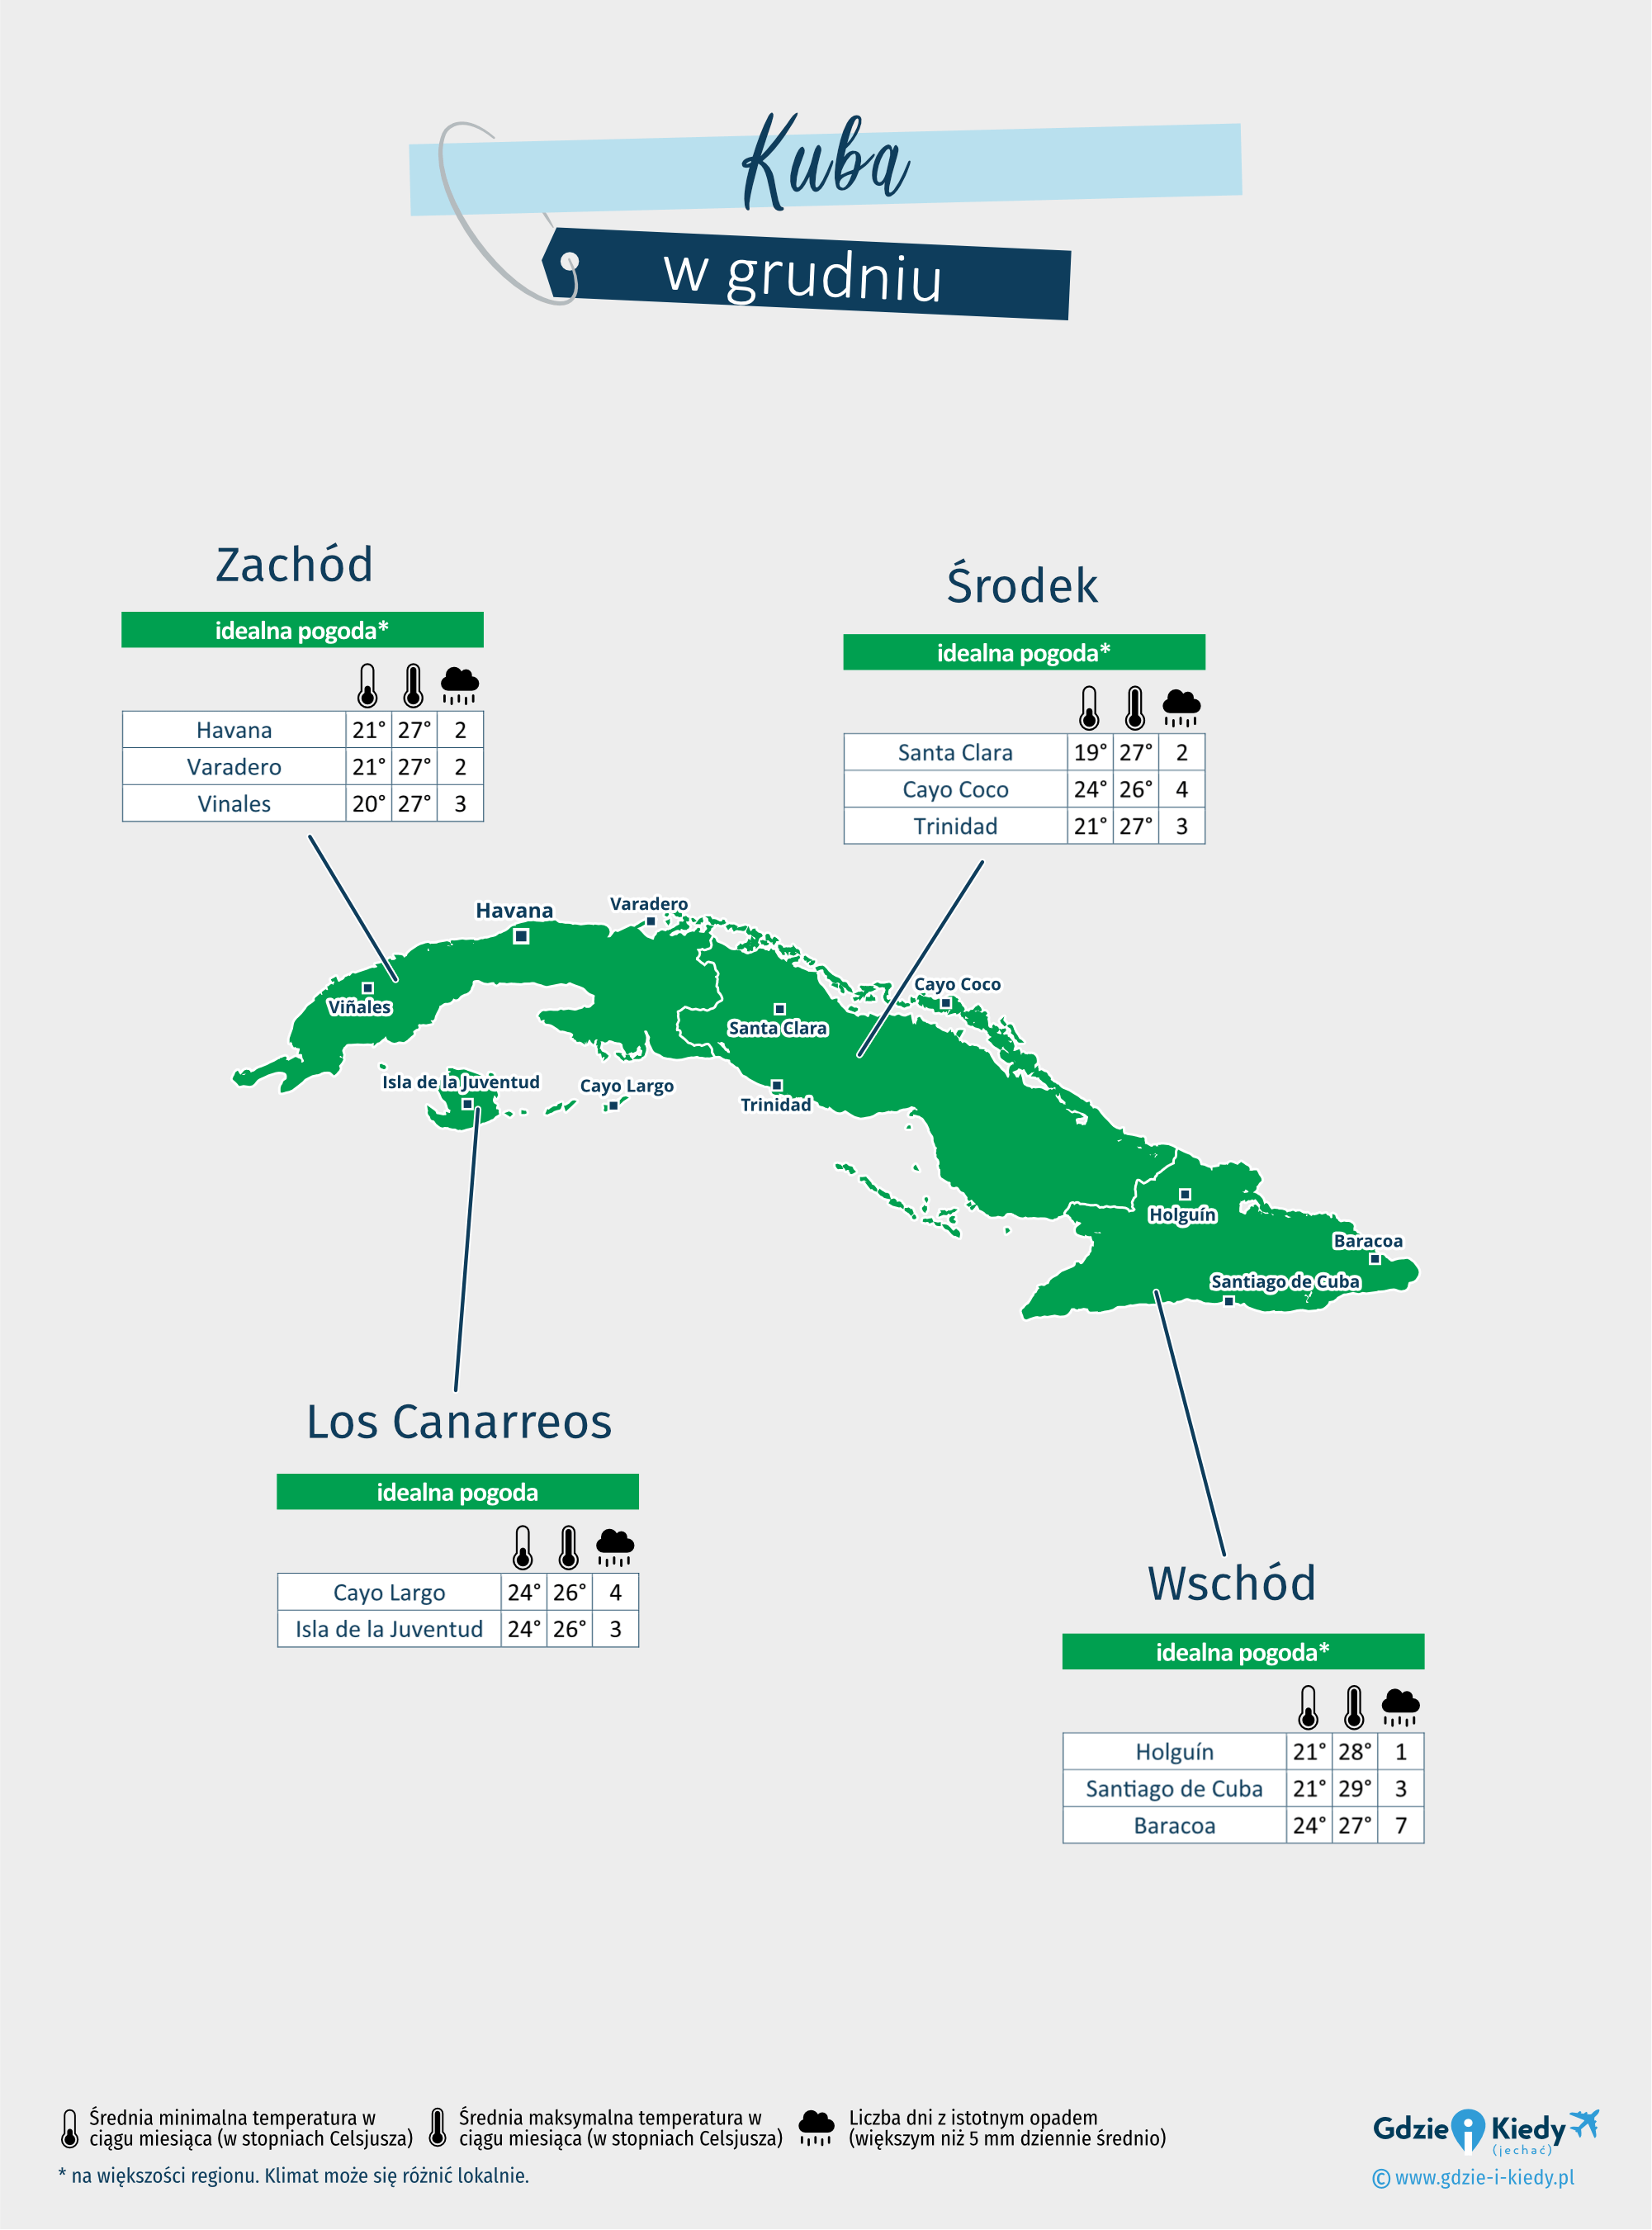 Kuba: mapa pogody w grudniu w różnych regionach